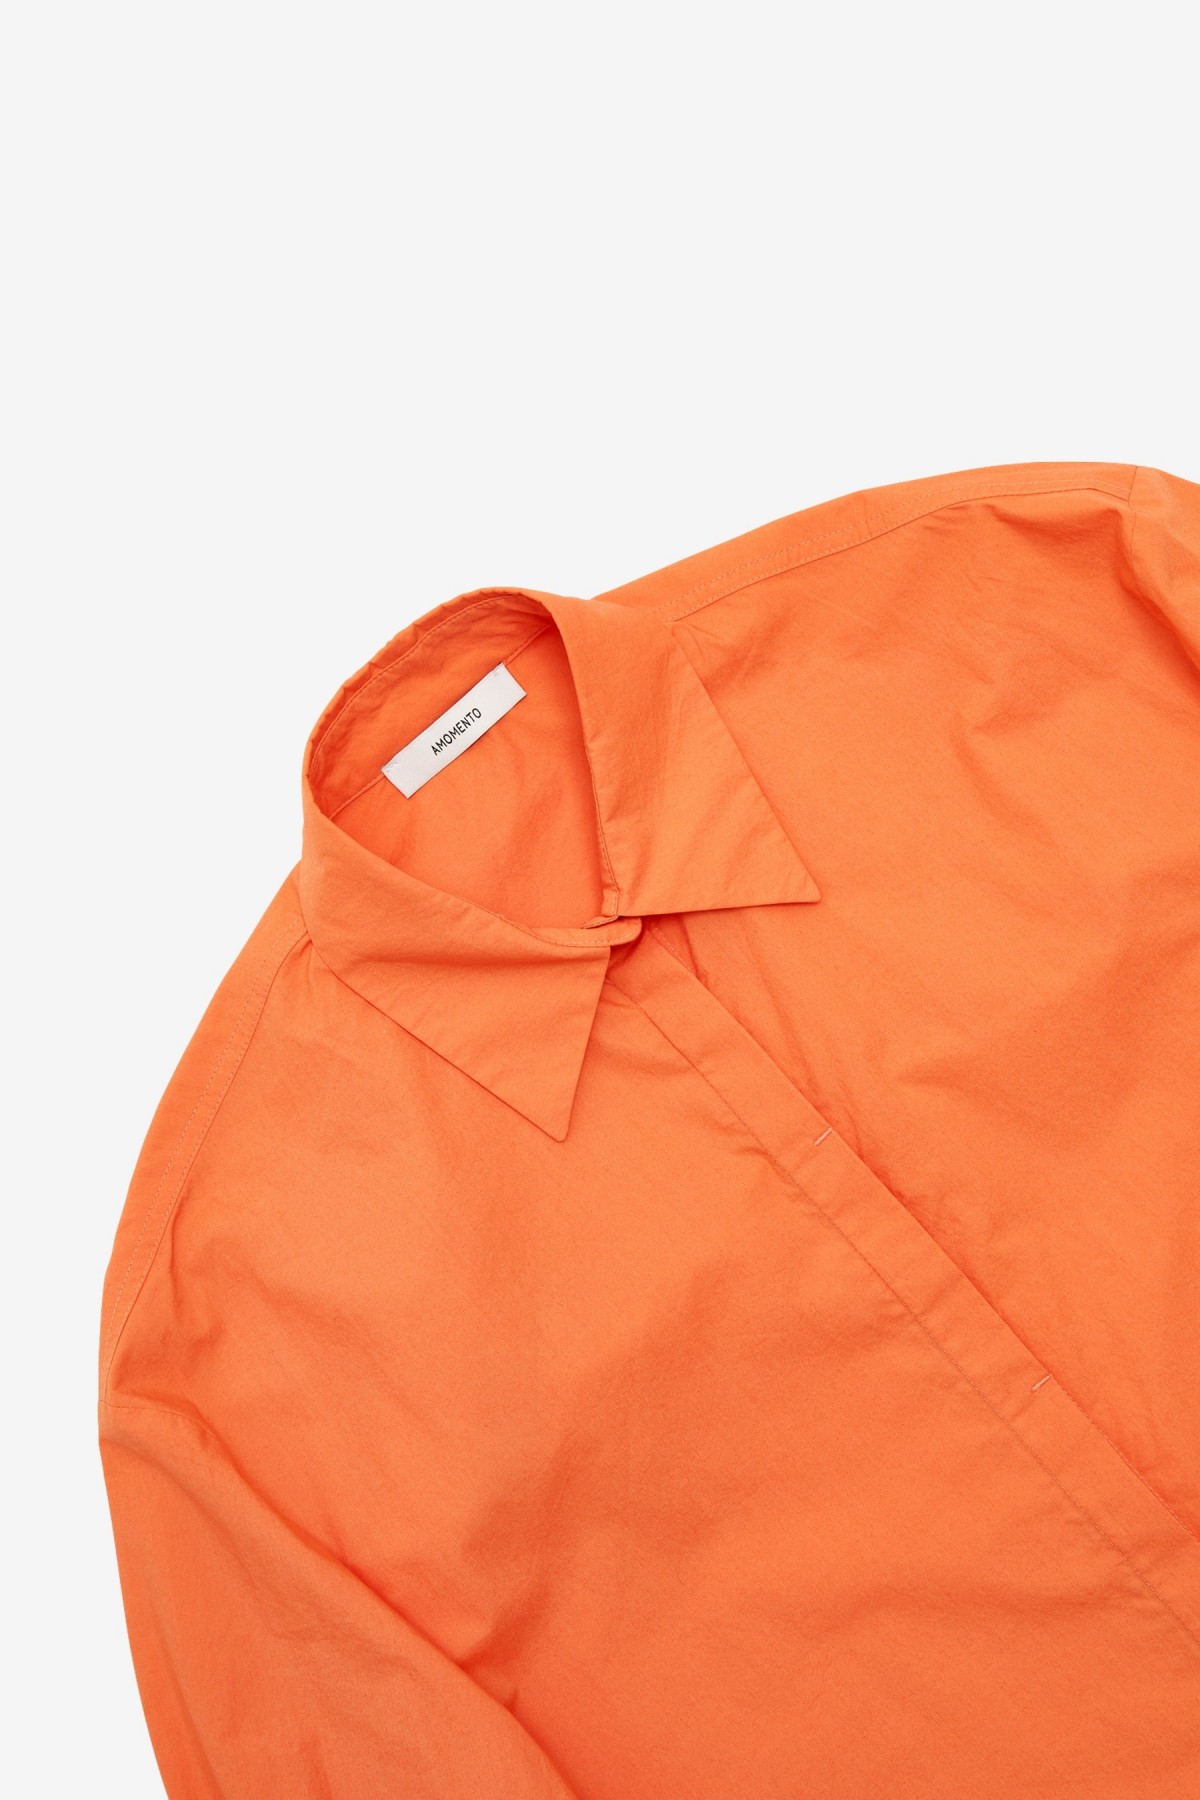 Amomento Oversized Shirt in Orange